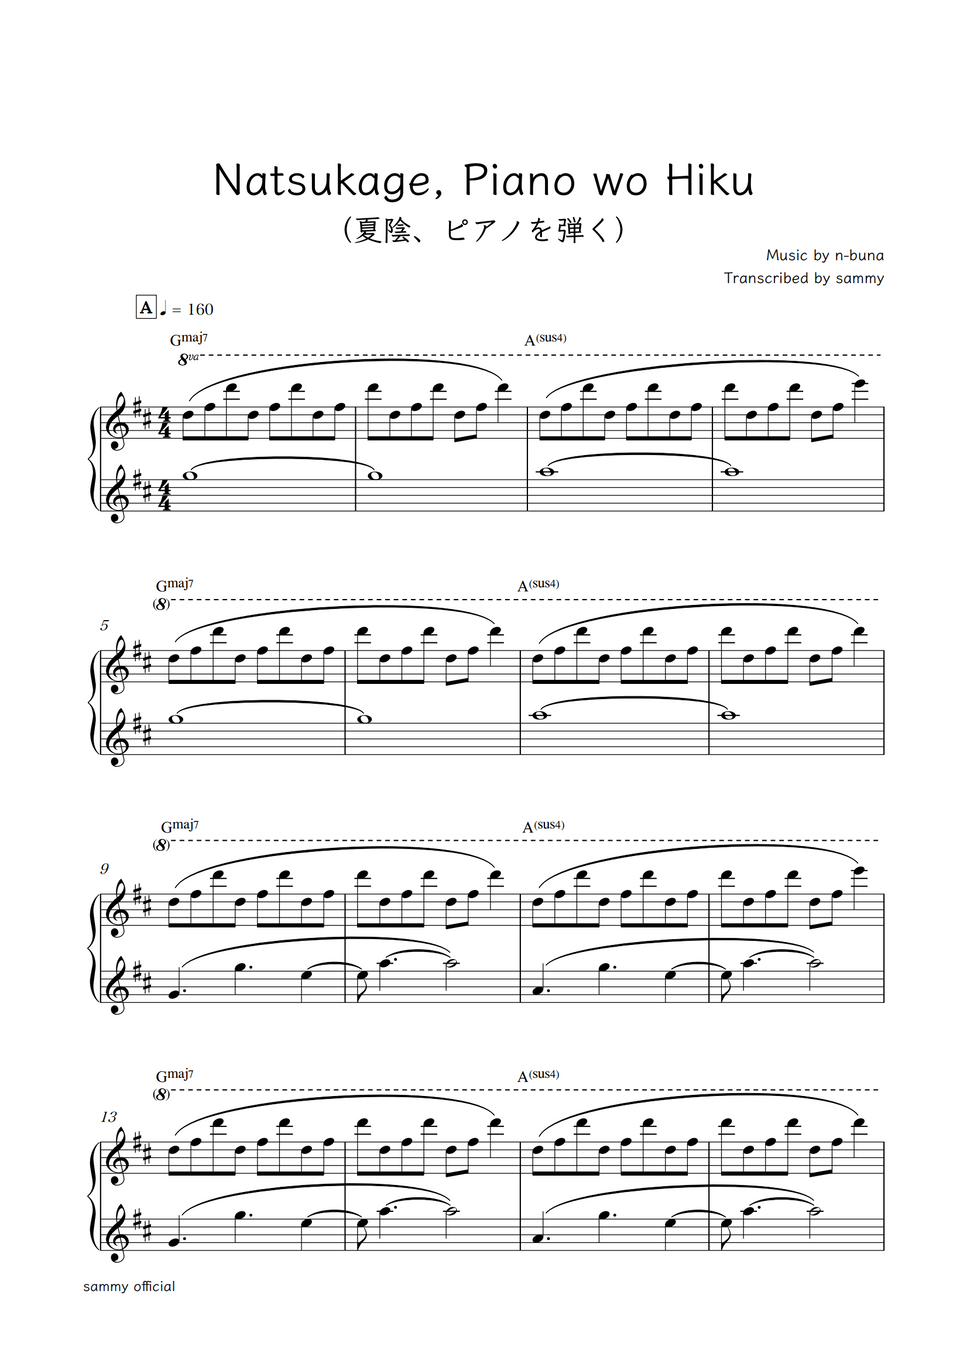 Yorushika（ヨルシカ） - Natsukage, Piano wo Hiku (夏陰、ピアノを弾く) by sammy